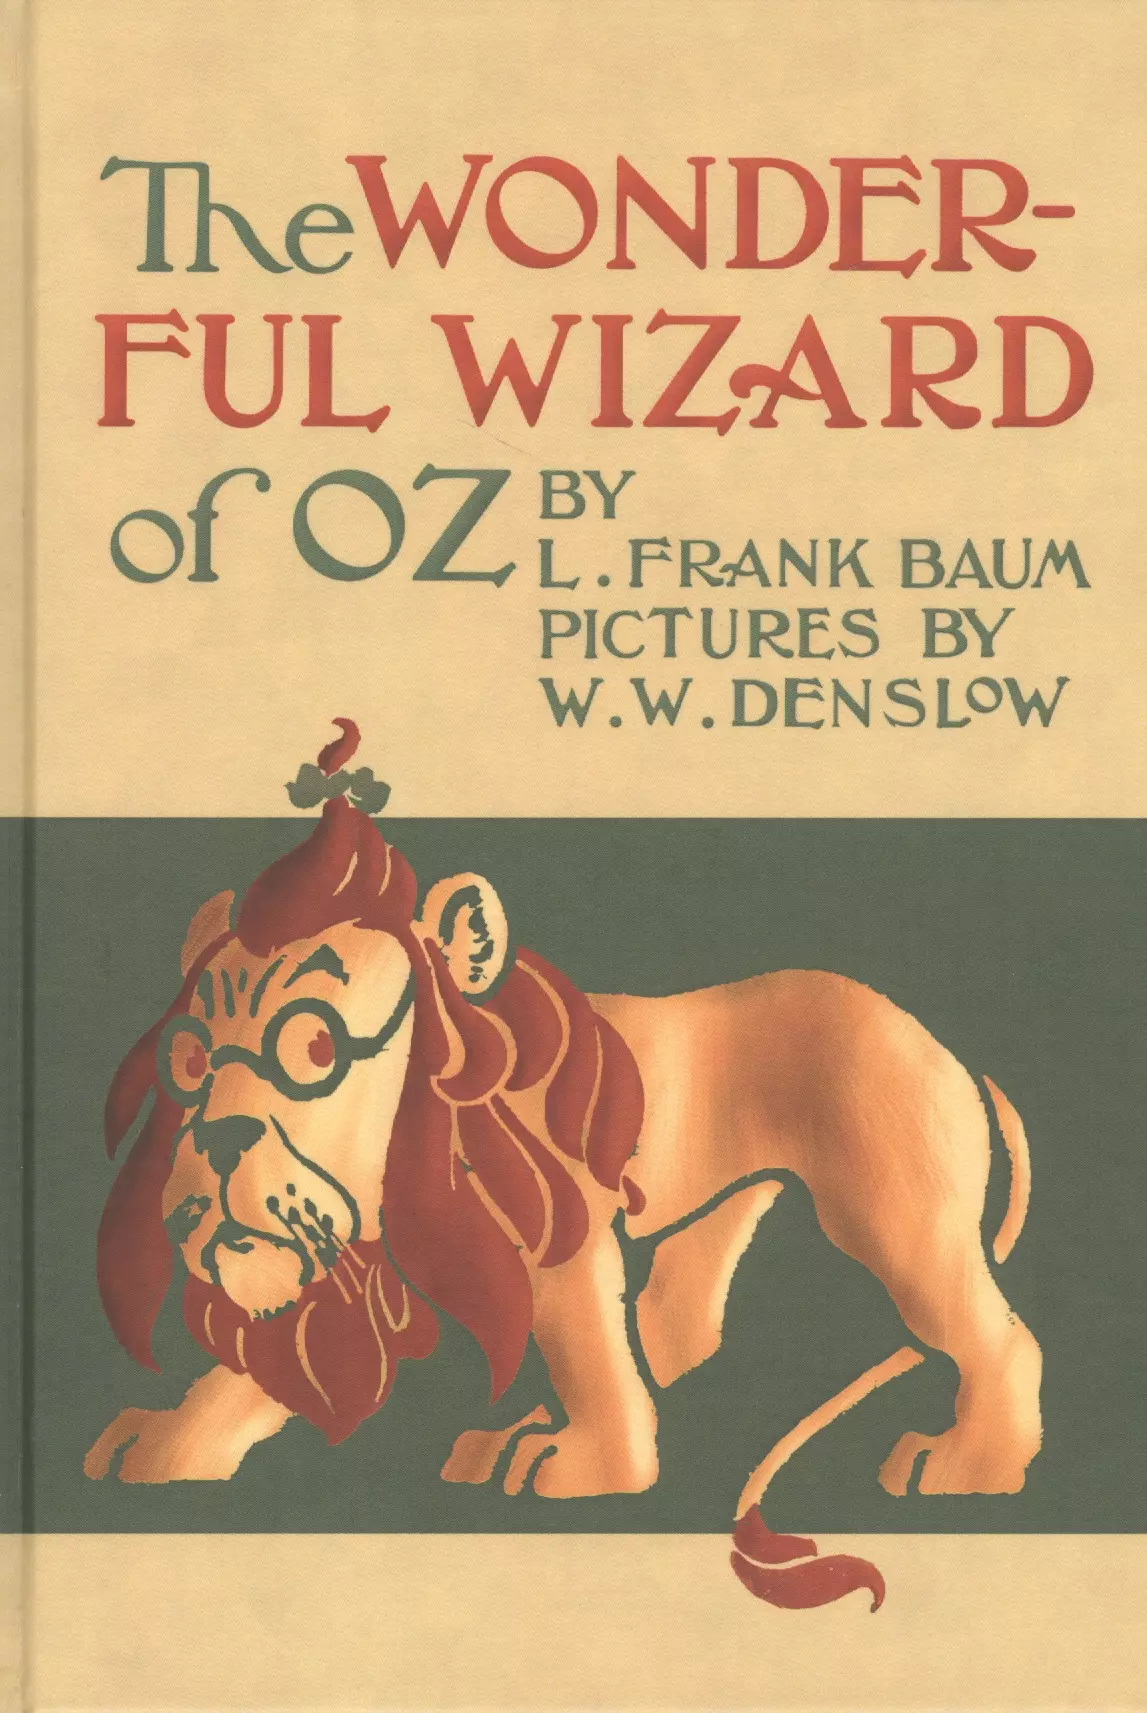 Баум Лаймен Фрэнк Лаймен The Wonderful wizard of Oz / Удивительный волшебник из страны Оз. Сказка на английском языке